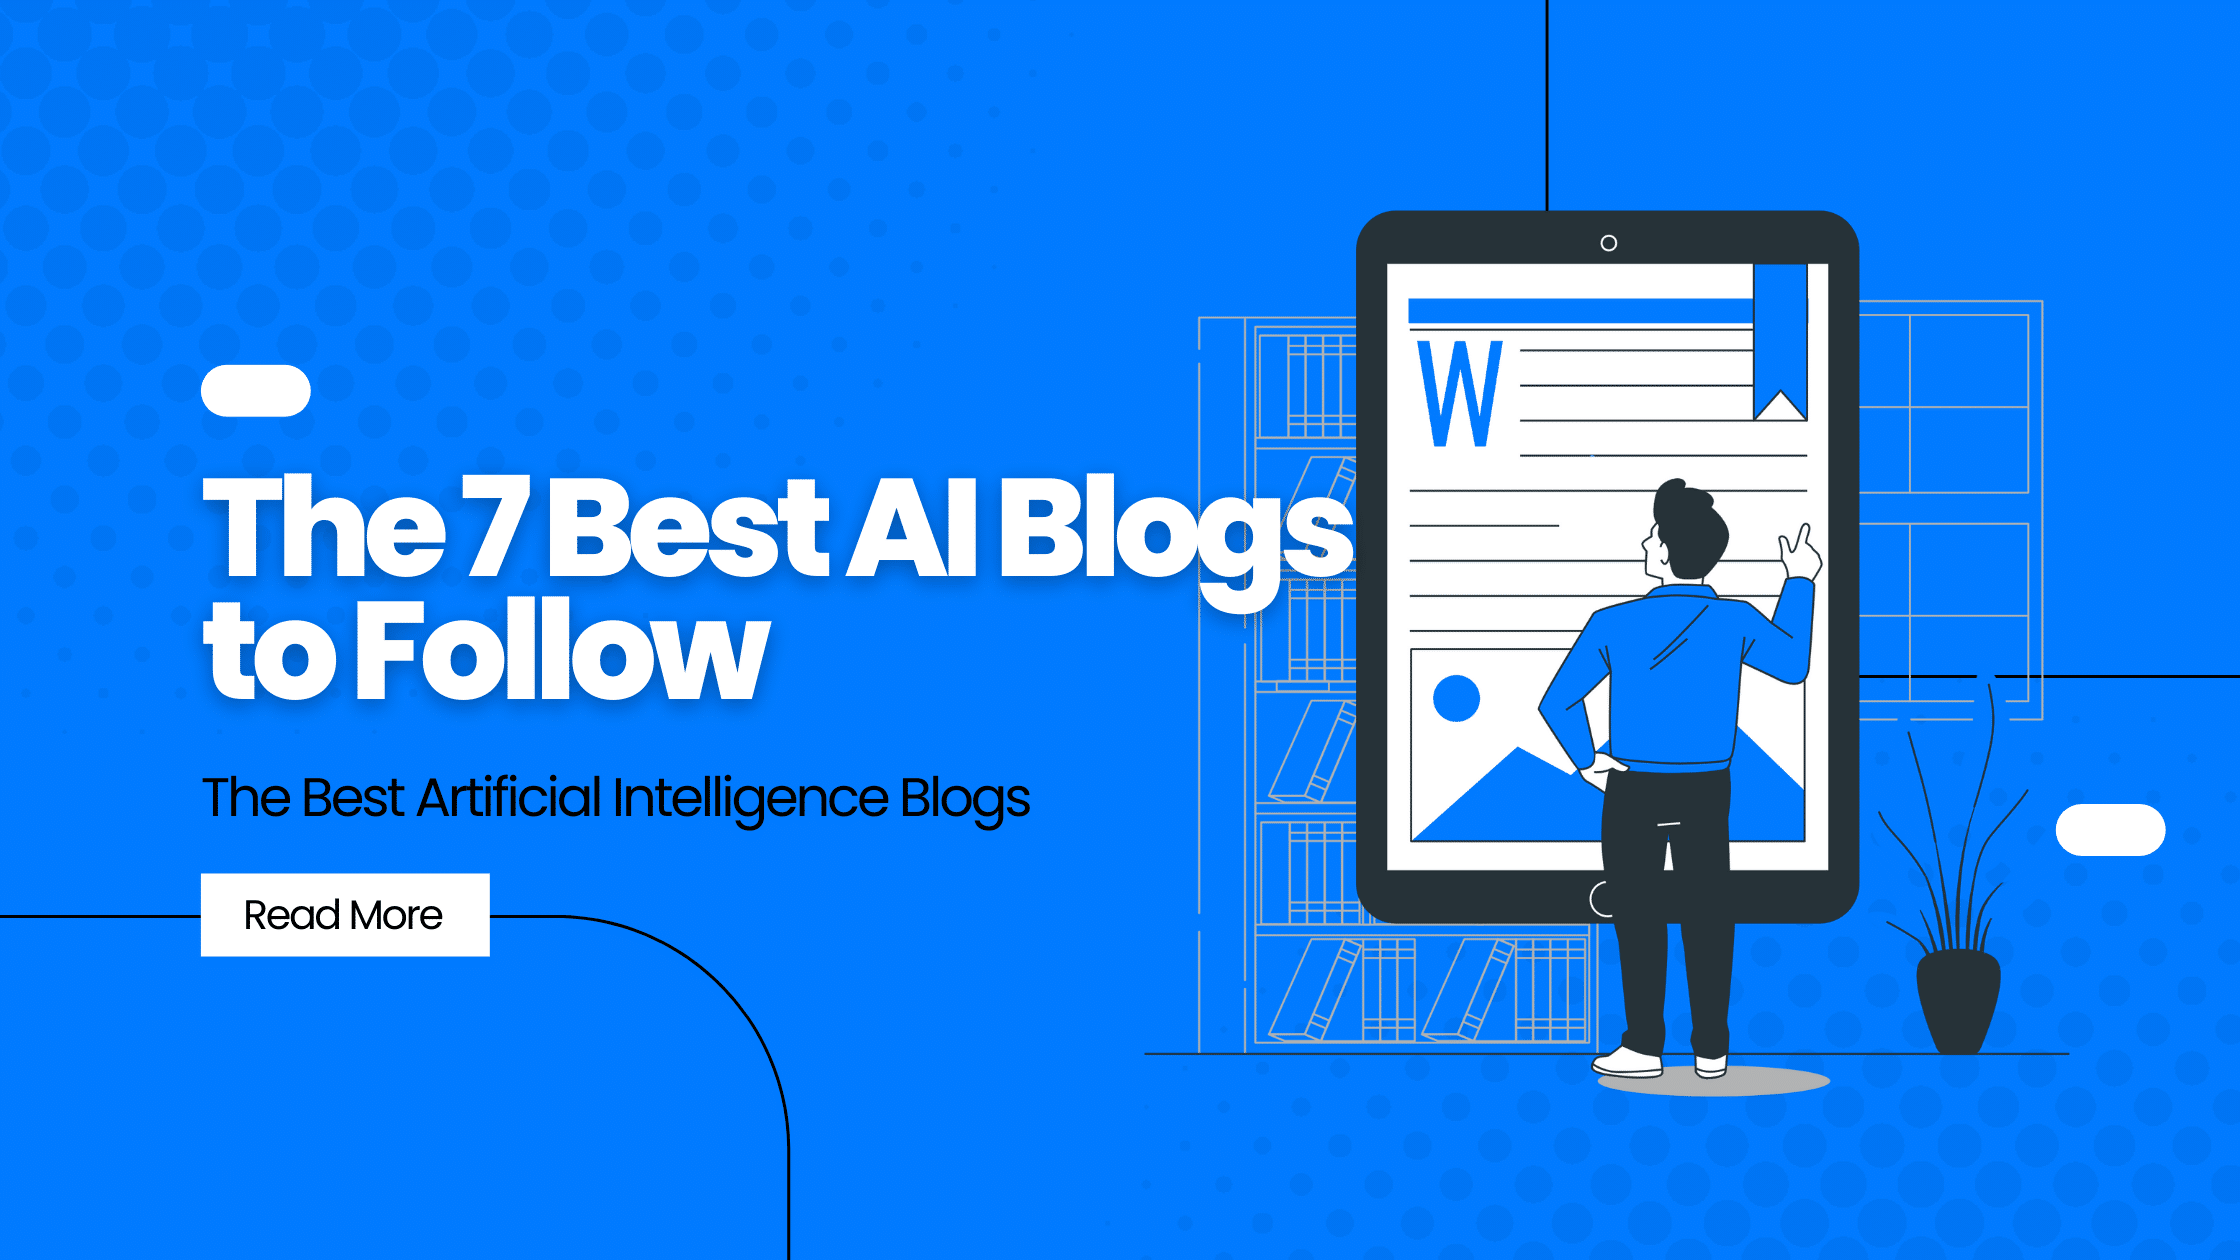 Best AI Blogs